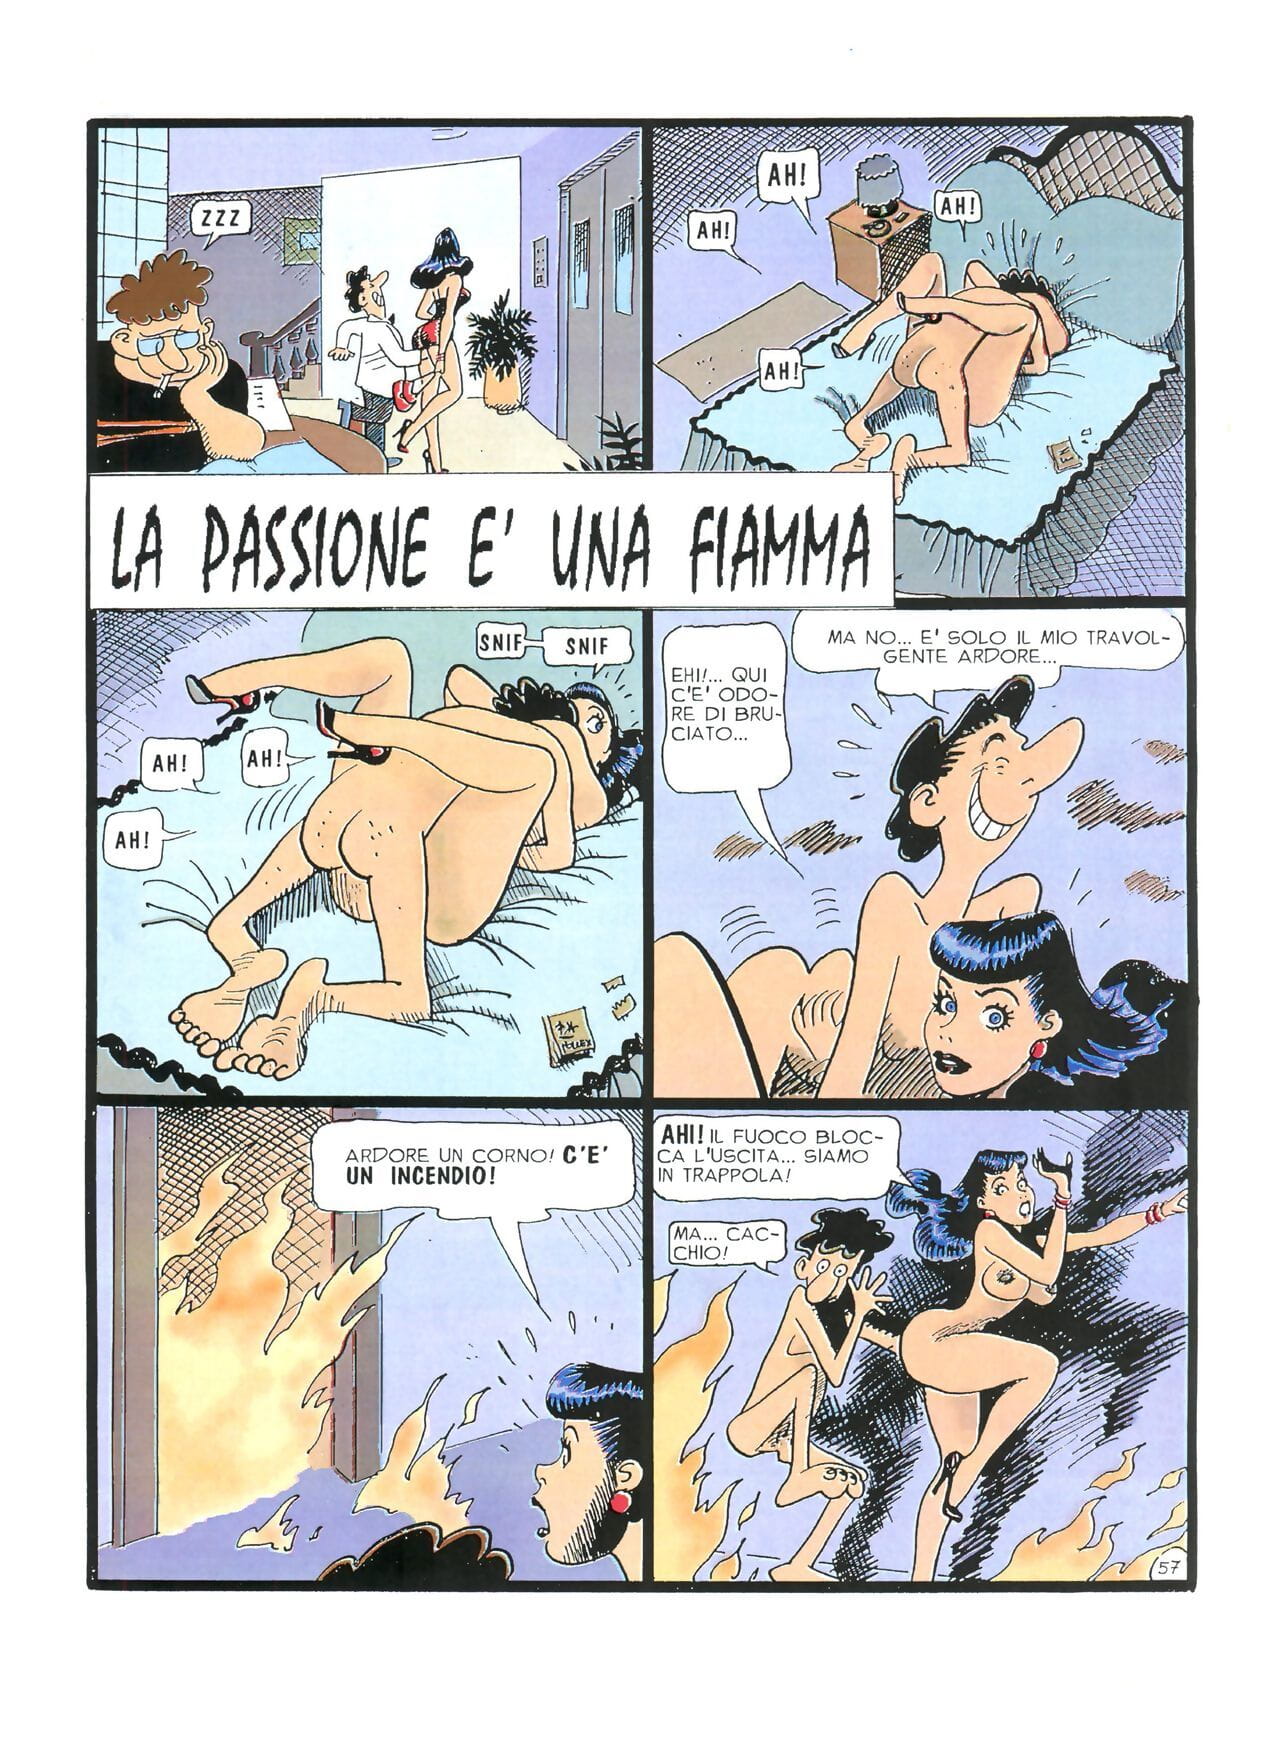 Chiara di Notte #1 - part 3 page 1